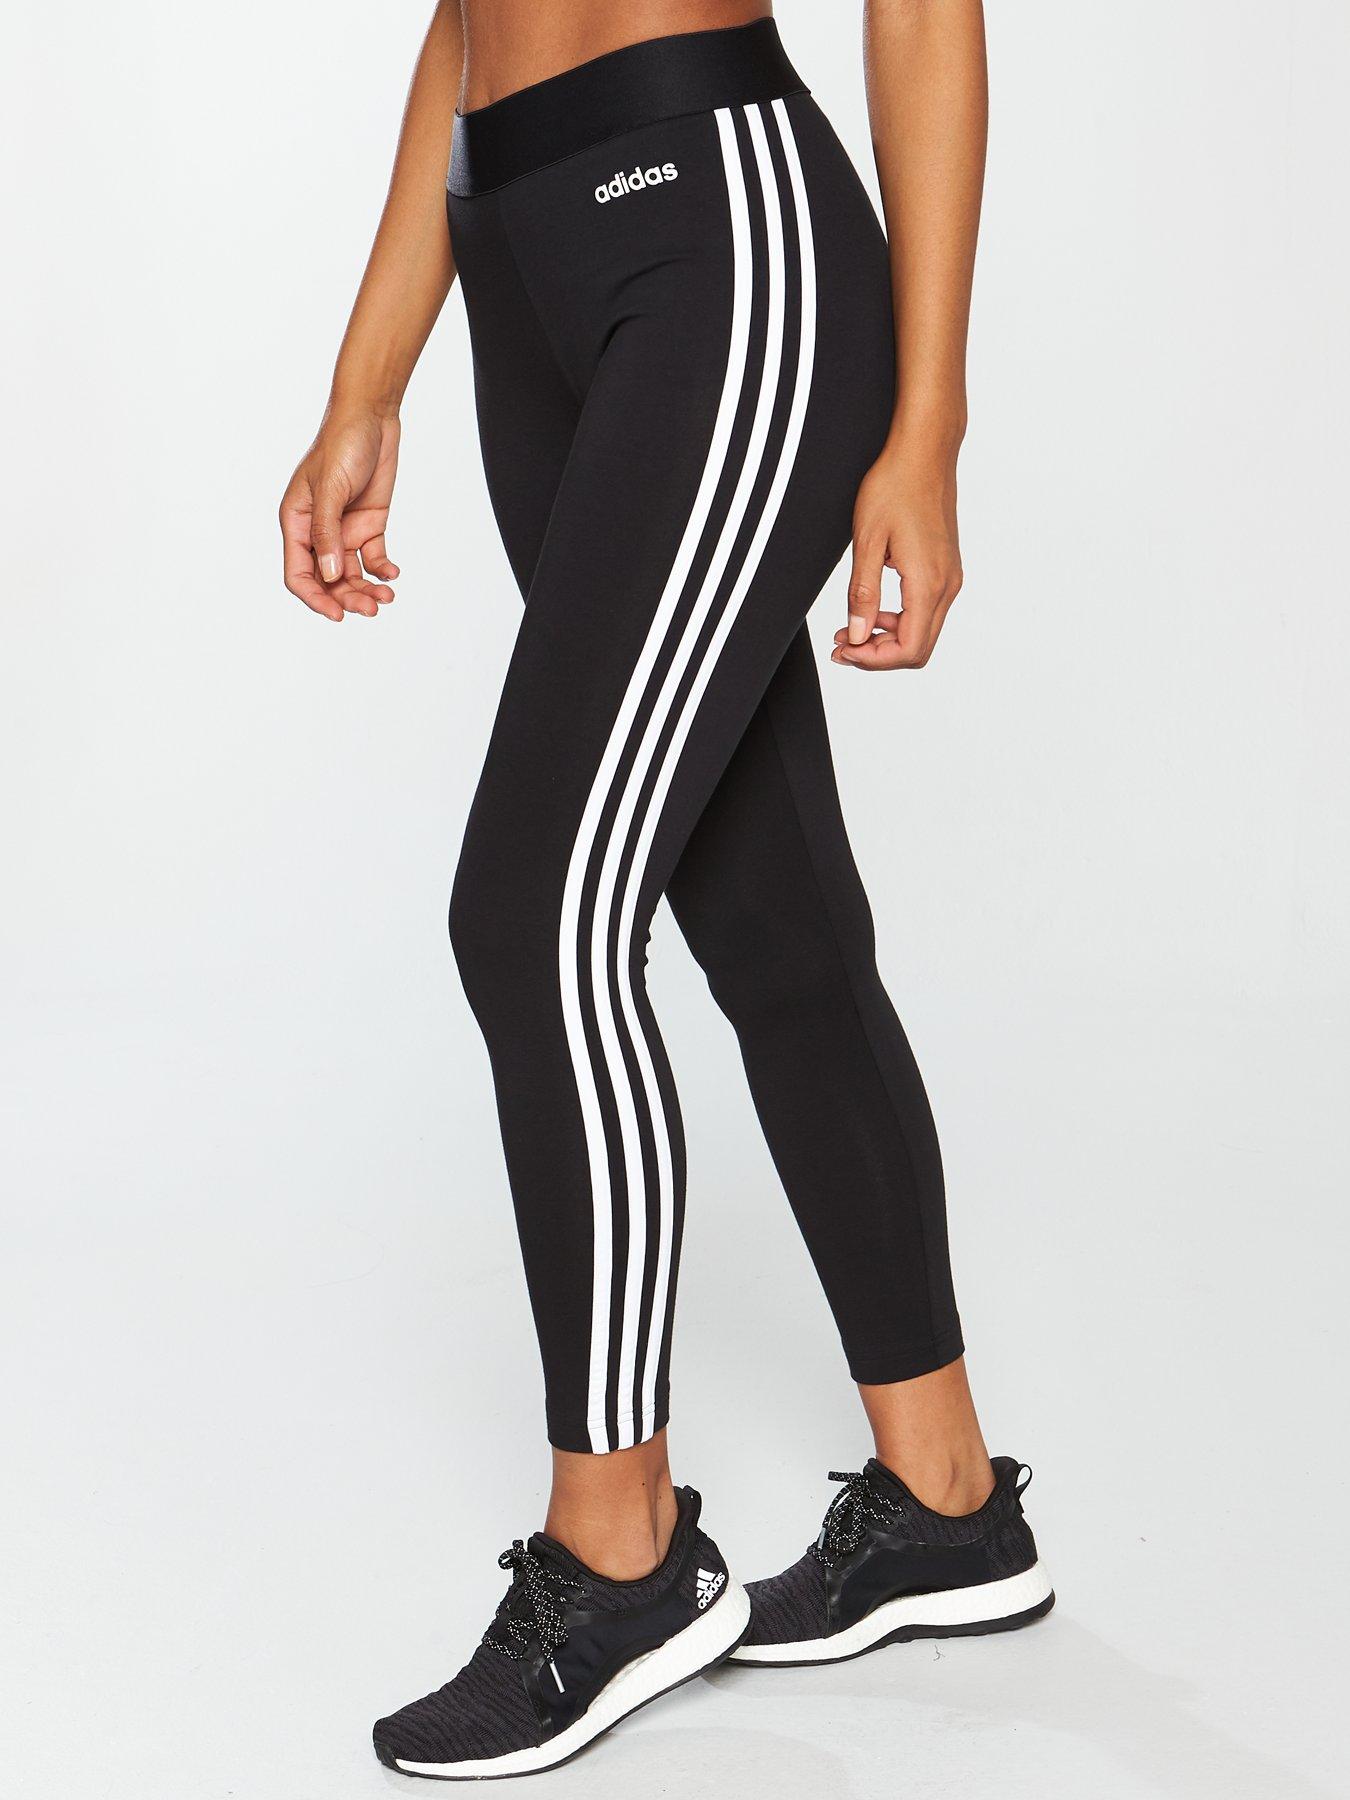 leggings 3 stripes adidas